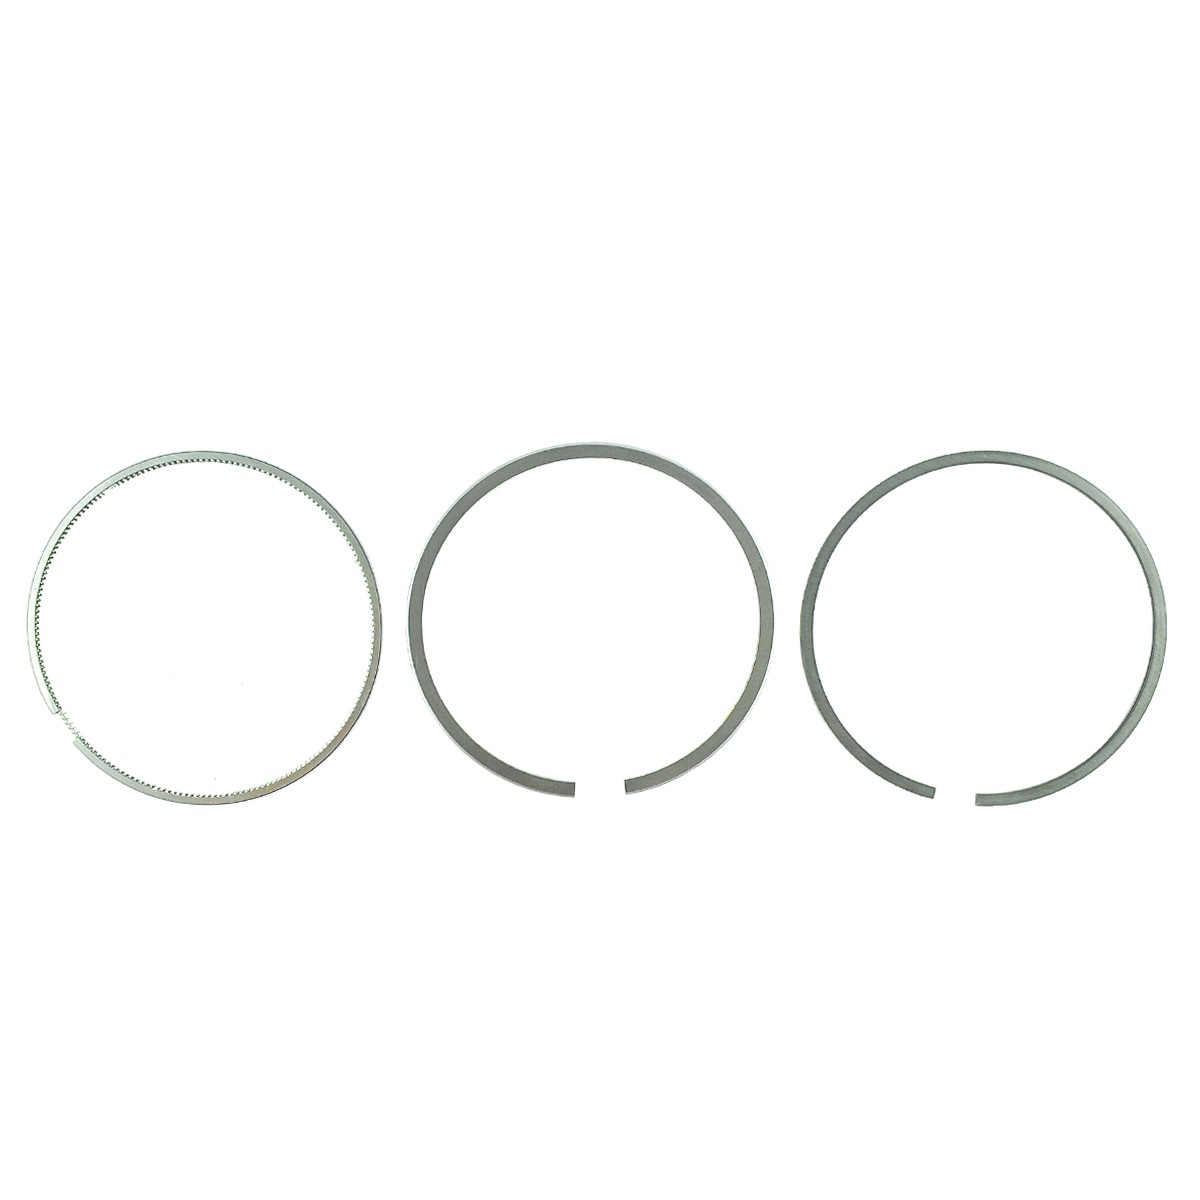 Piston rings / Ø 84 mm / 2 x 1.50 x 4 / STD / Shibaura J843/N843/N844 / Shibaura D23/D238/D258F/D275/D278 / 115017541